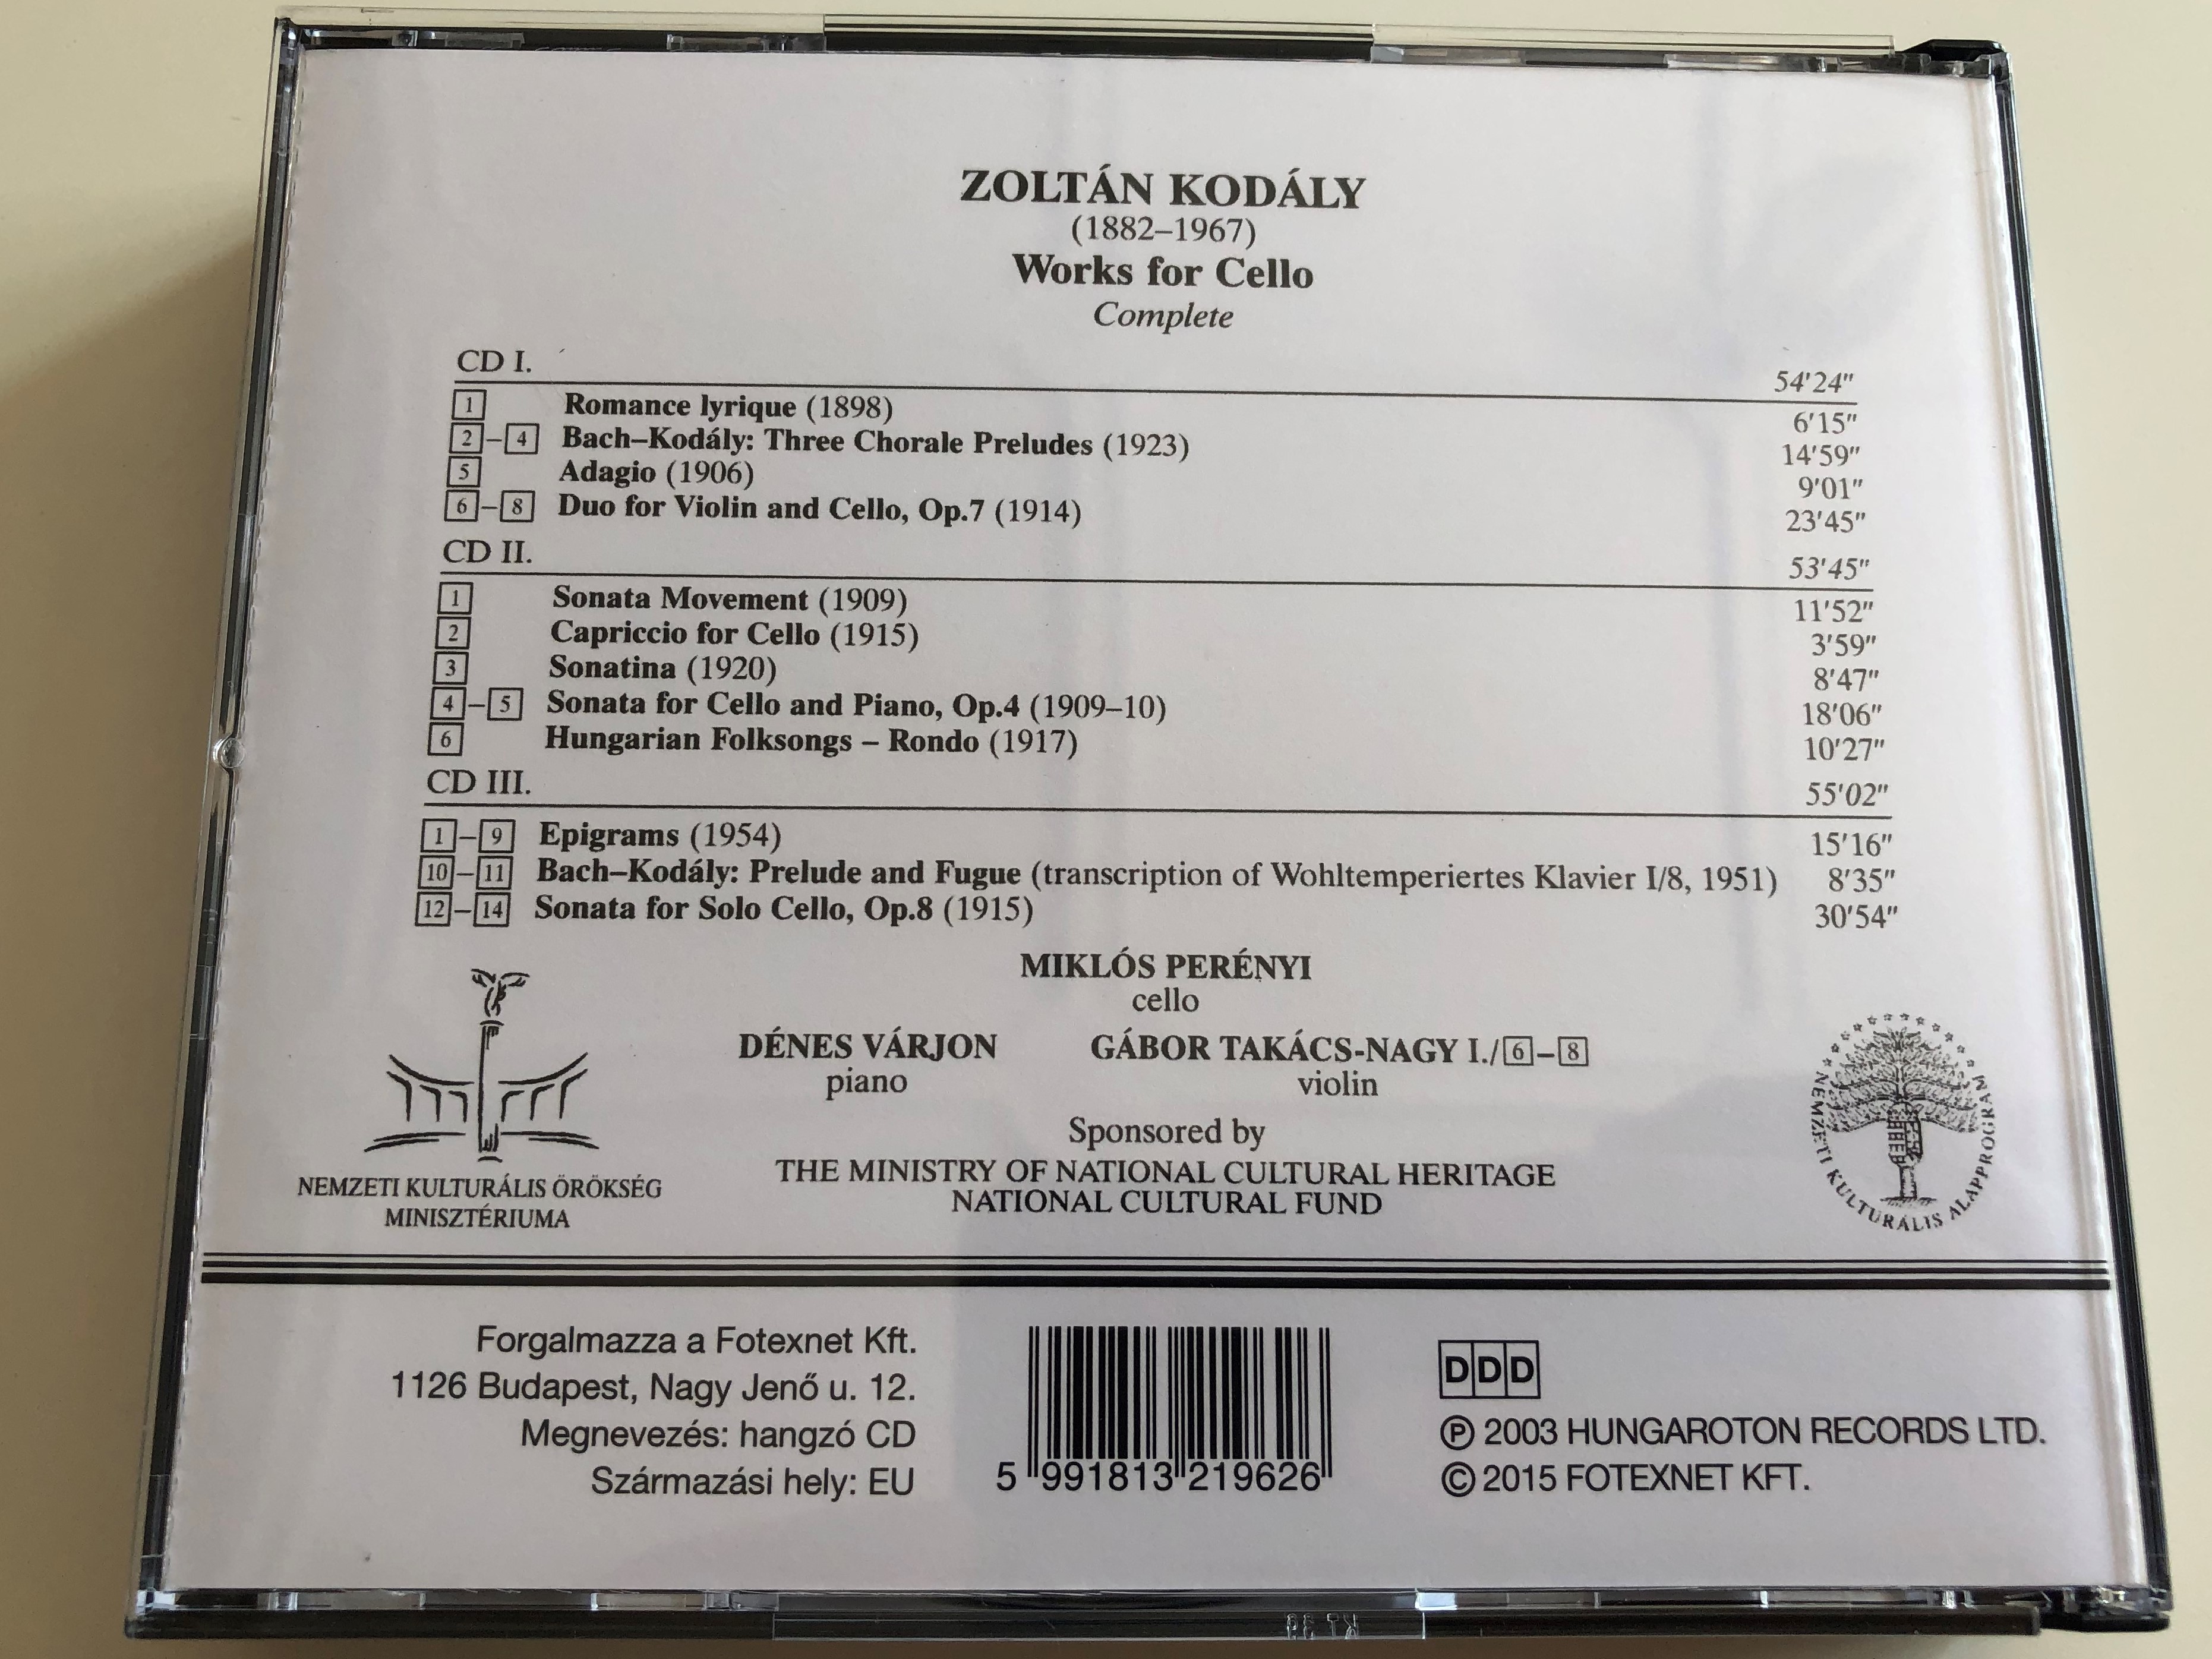 kod-ly-works-for-cello-complete-mikl-s-per-nyi-d-nes-v-rjon-g-bor-tak-cs-nagy-hungaroton-classic-hcd-32196-98-audio-cd-set-3-discs-9-.jpg